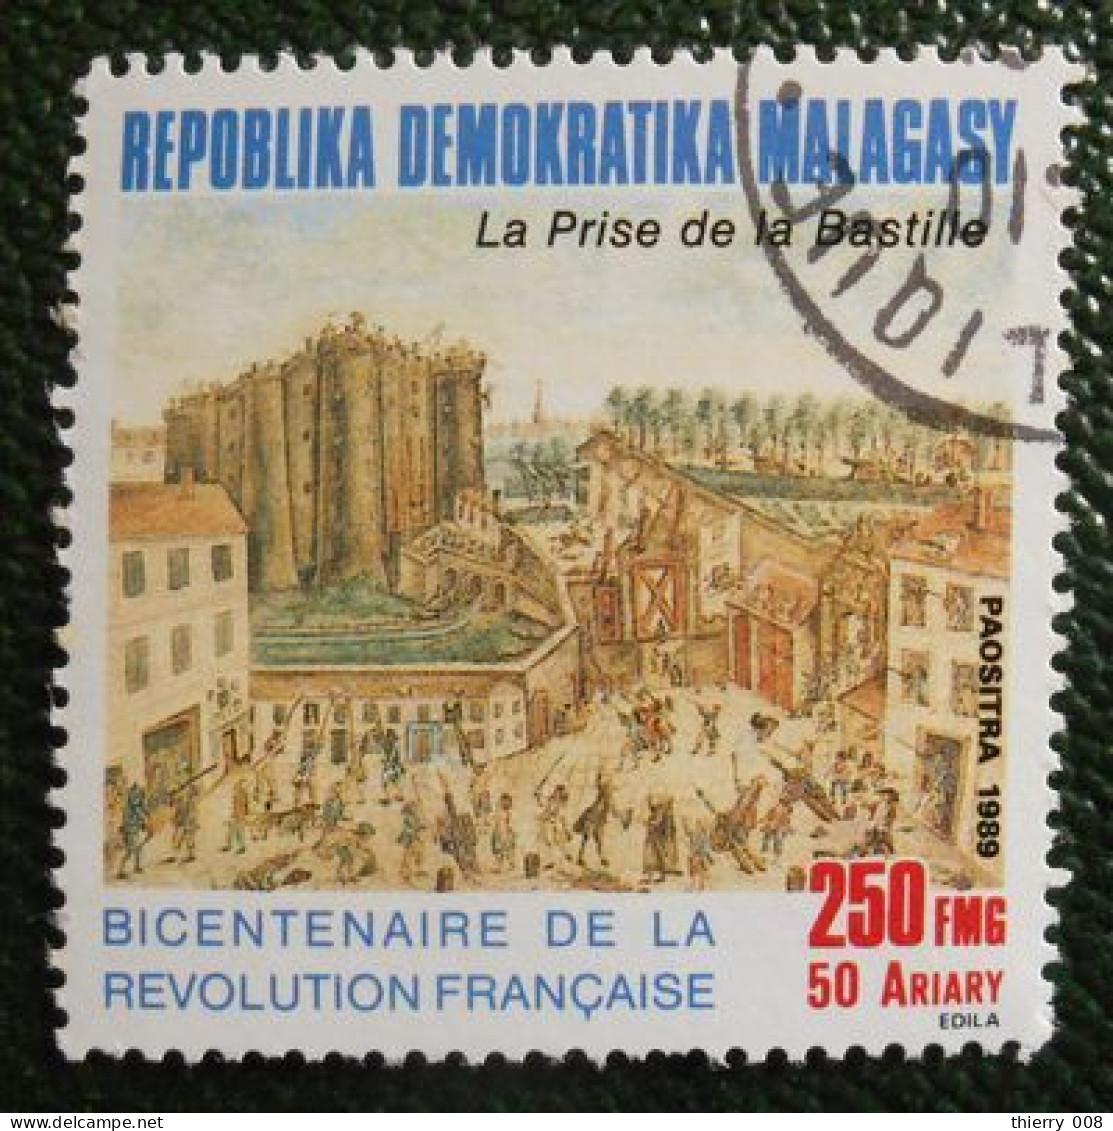 45 République Démocratique Malgache Malagasy Oblitéré Prise De La Bastille - Franse Revolutie